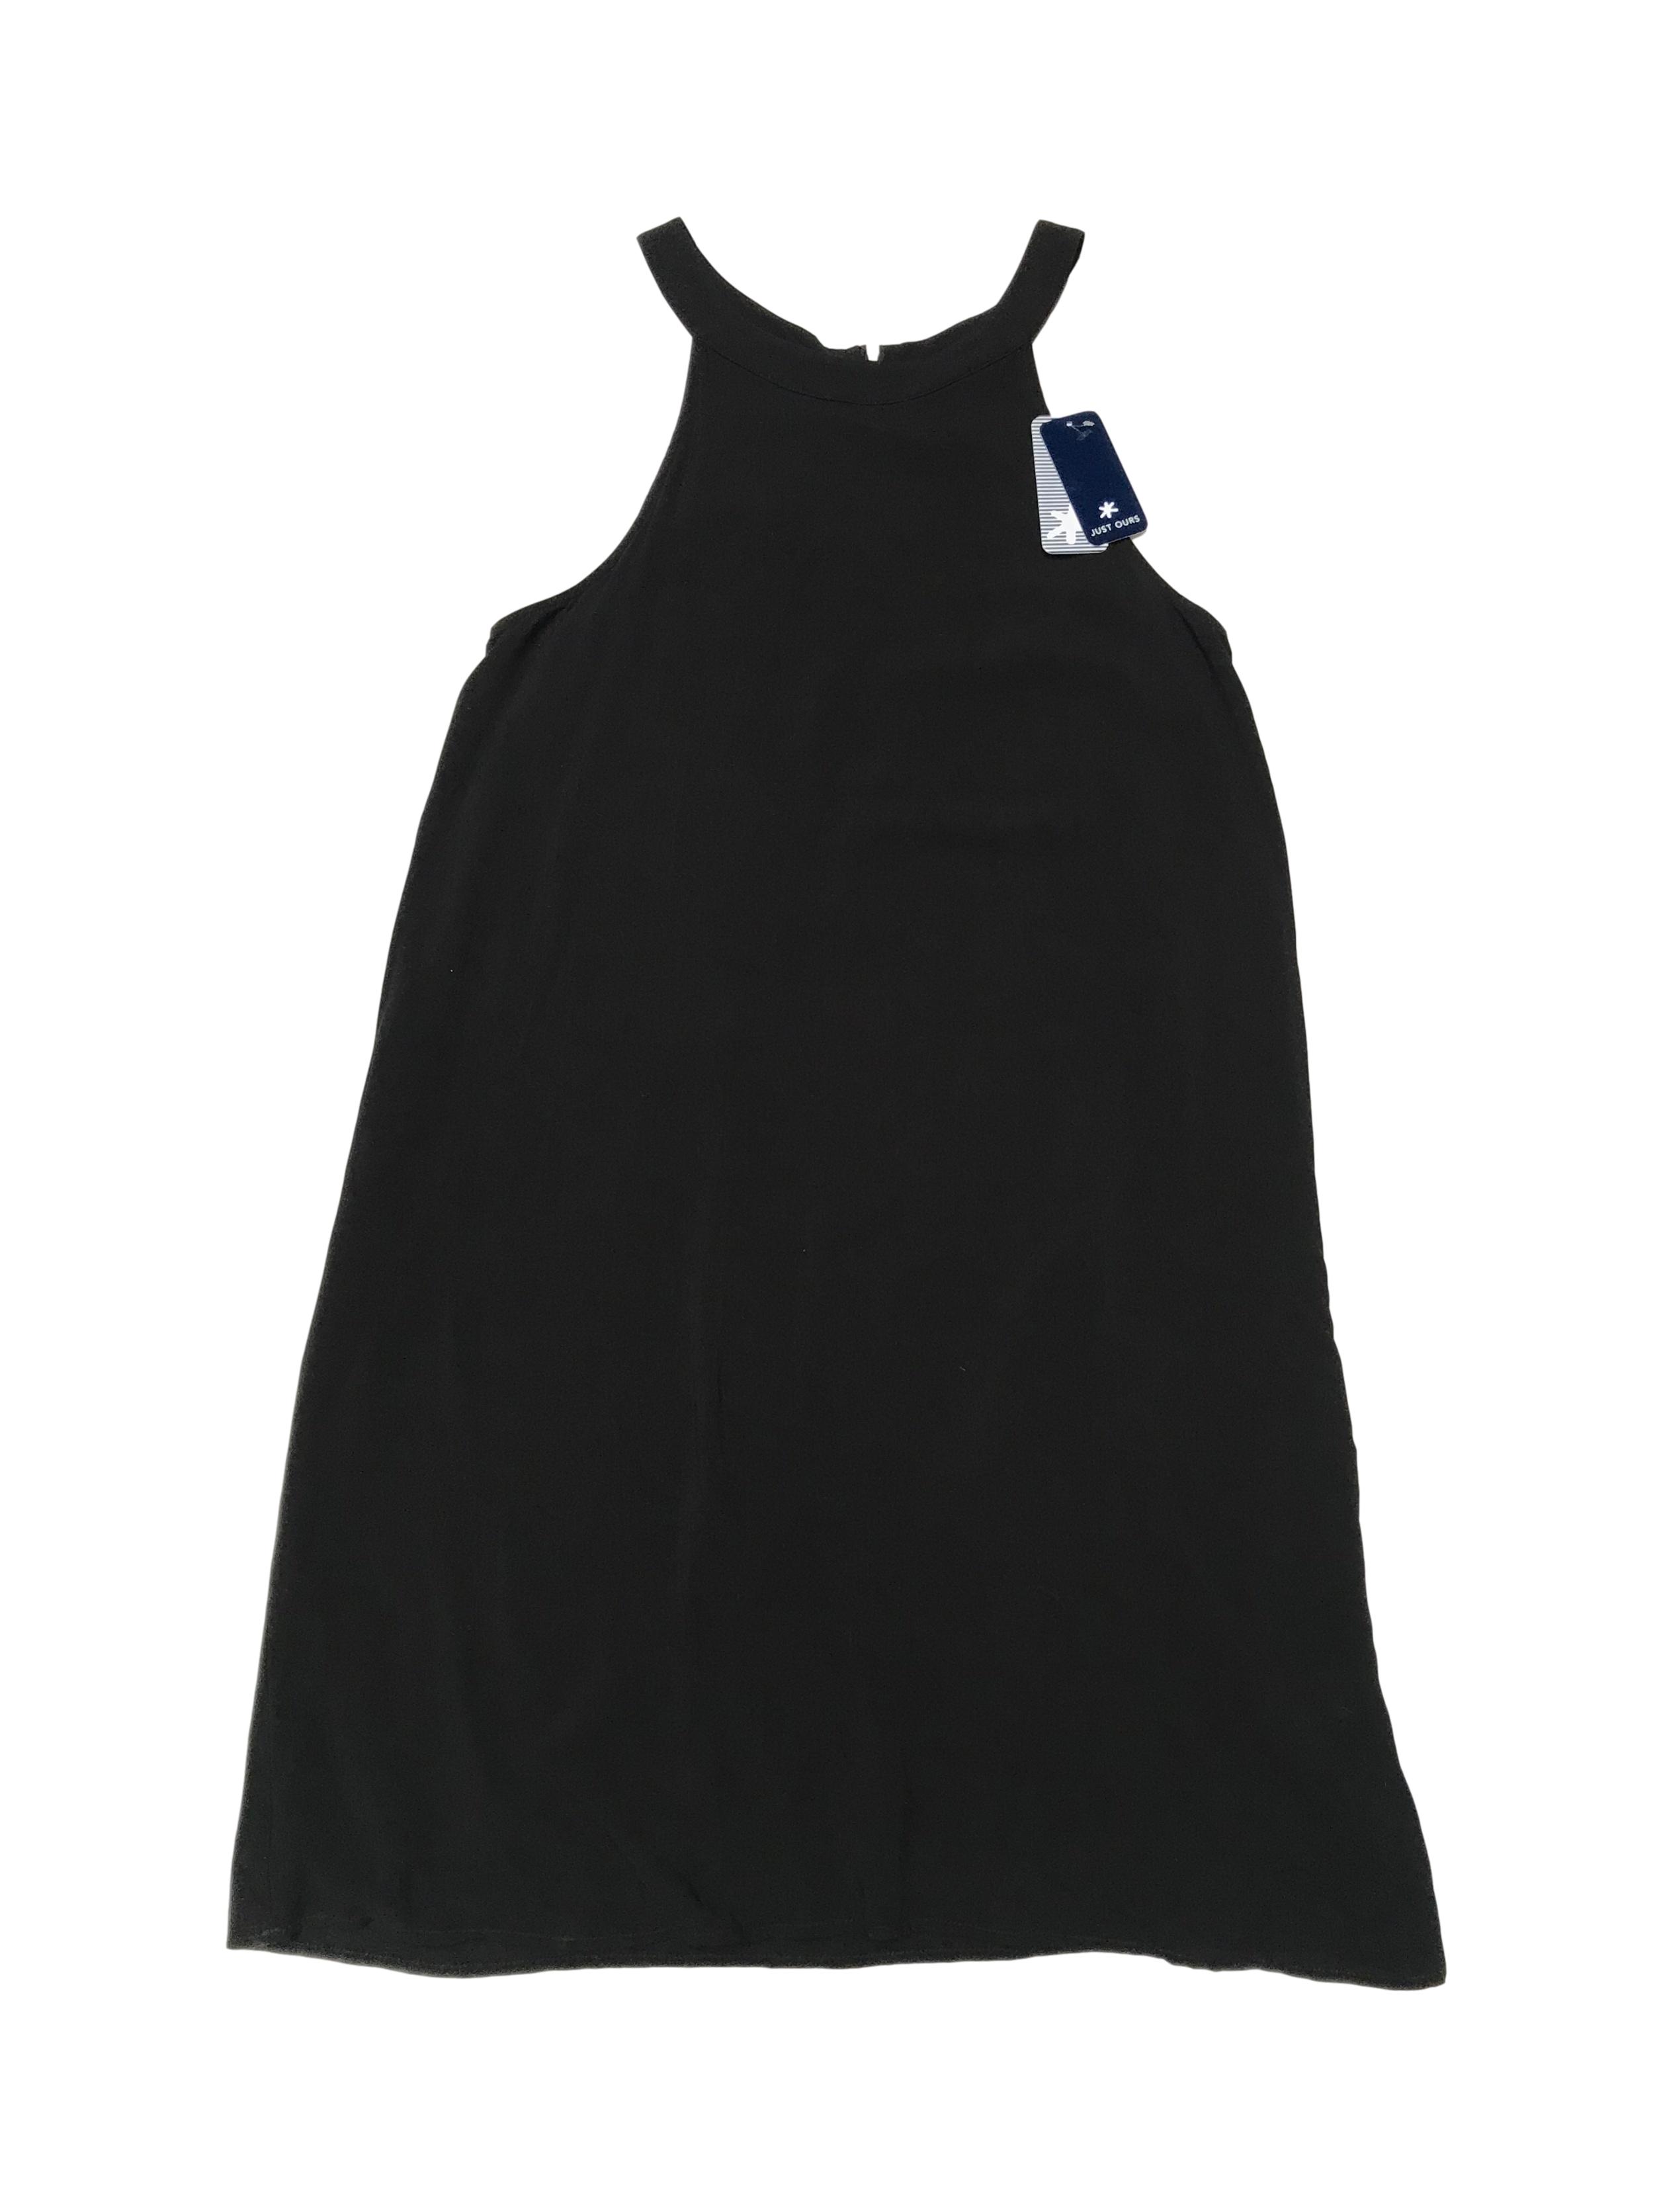 Vestido Splendid negro 100% rayón, corte en A, doble capa de tela y cierre en la espalda. Busto 92cm Largo 92cm. Nuevo con etiqueta. Precio original S/ 420